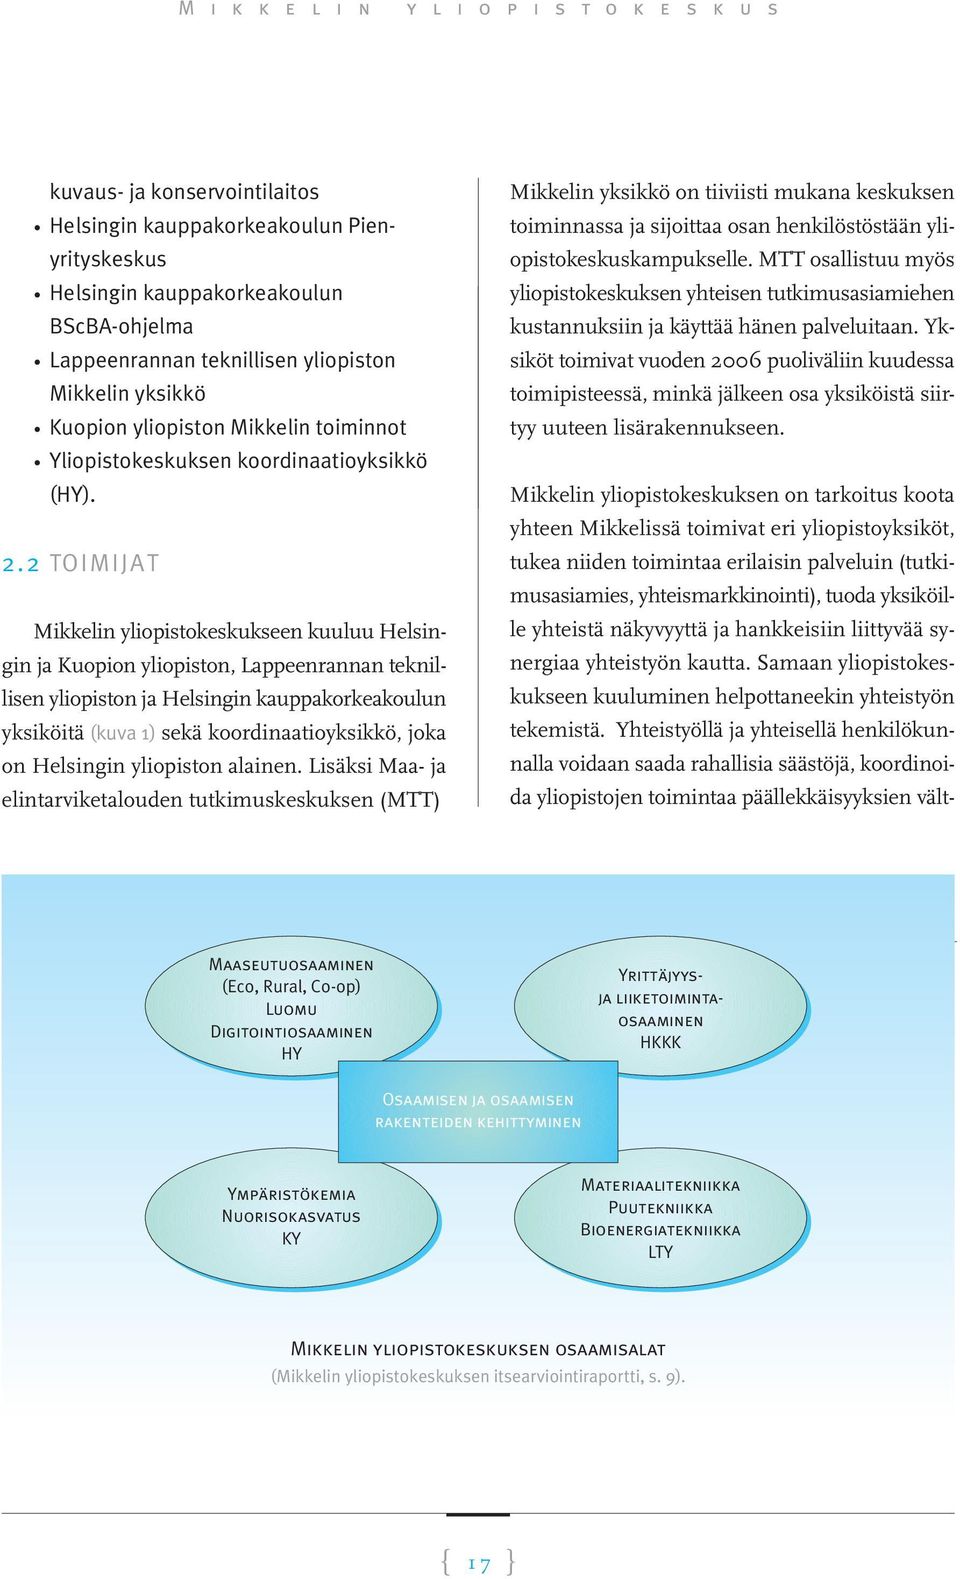 2 TOIMIJAT Mikkelin yliopistokeskukseen kuuluu Helsingin ja Kuopion yliopiston, Lappeenrannan teknillisen yliopiston ja Helsingin kauppakorkeakoulun yksiköitä (kuva 1) sekä koordinaatioyksikkö, joka